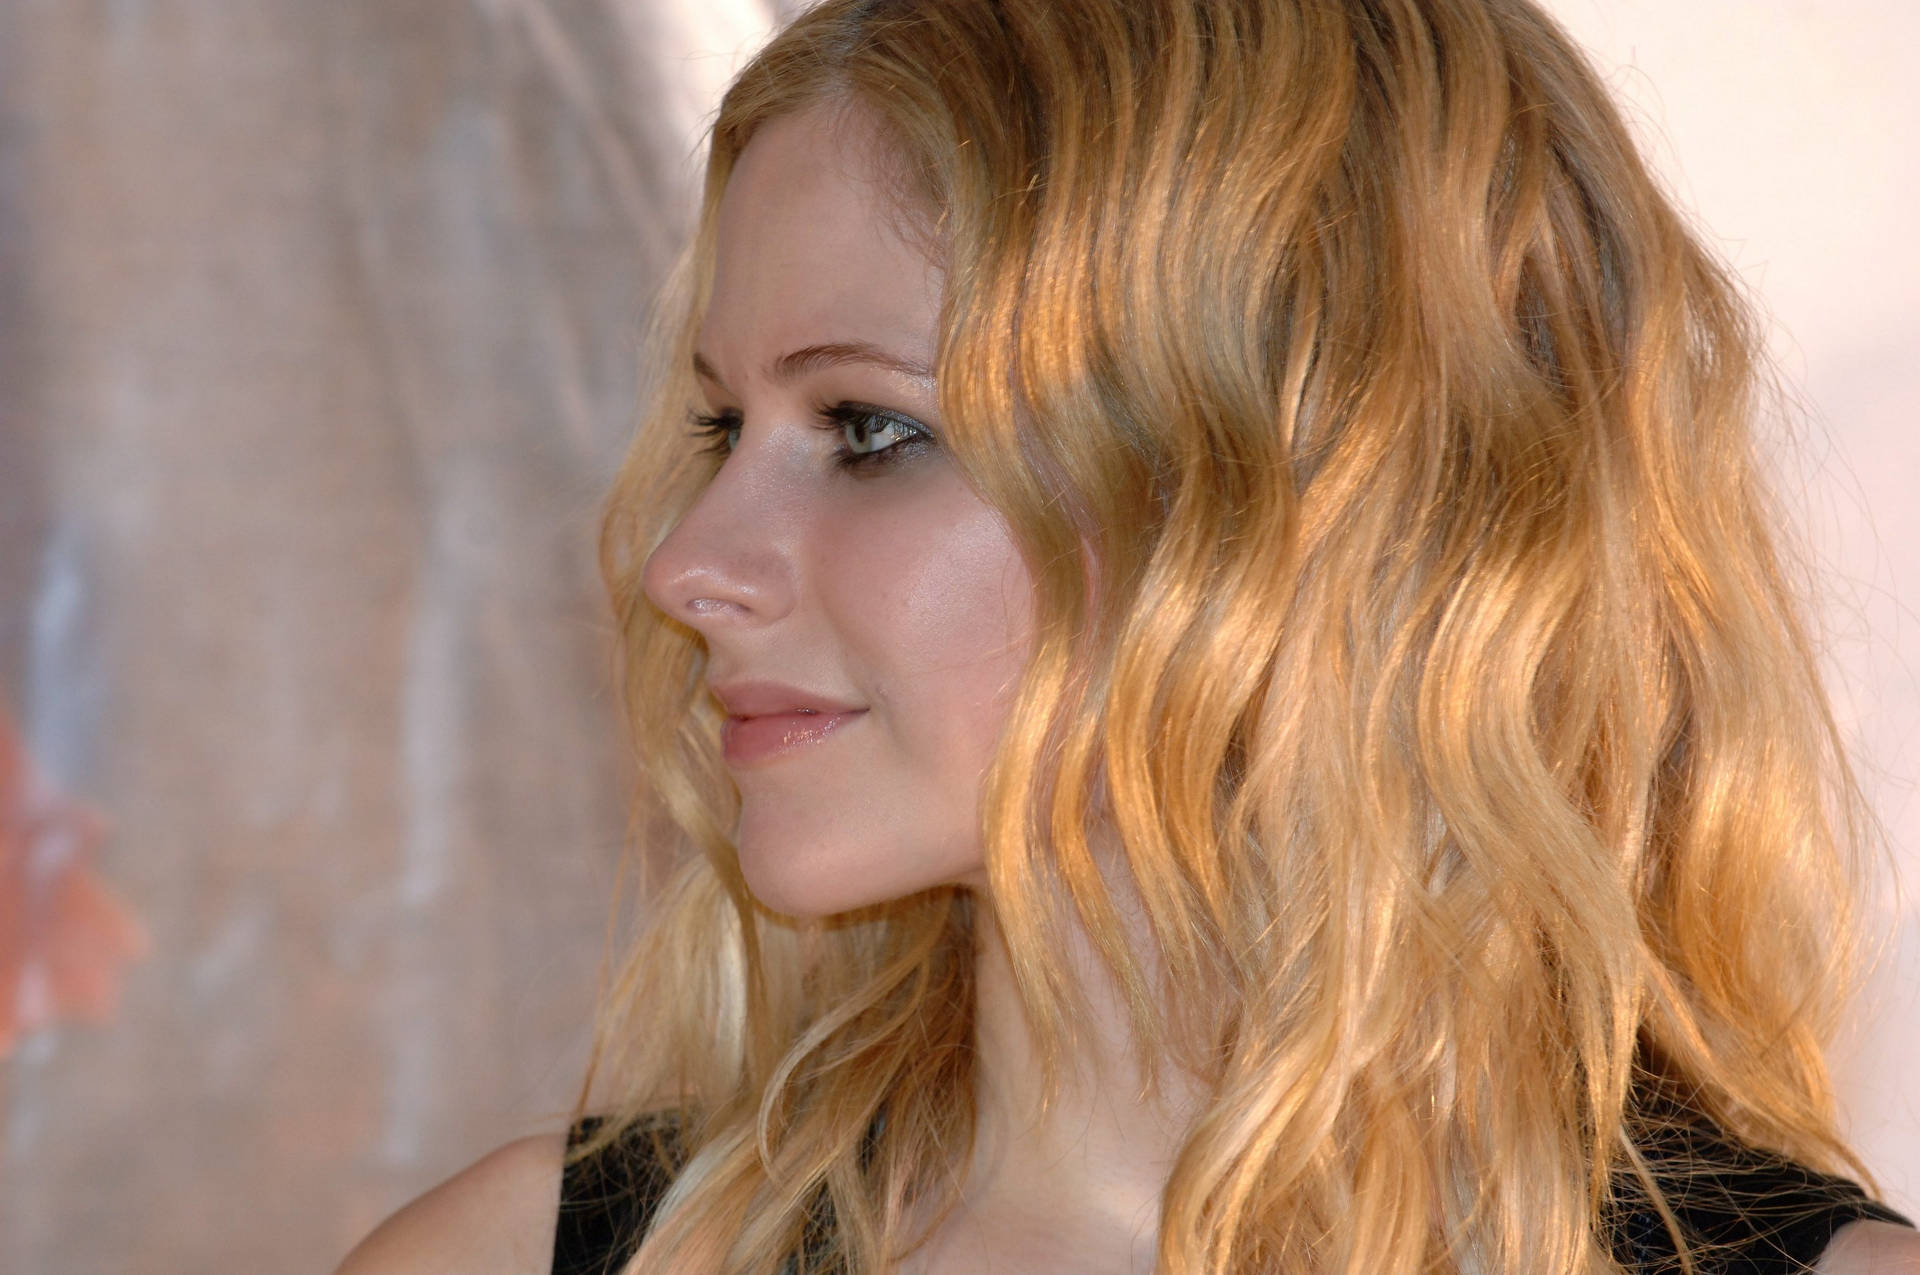 Avril Lavigne Side Profile Wallpaper